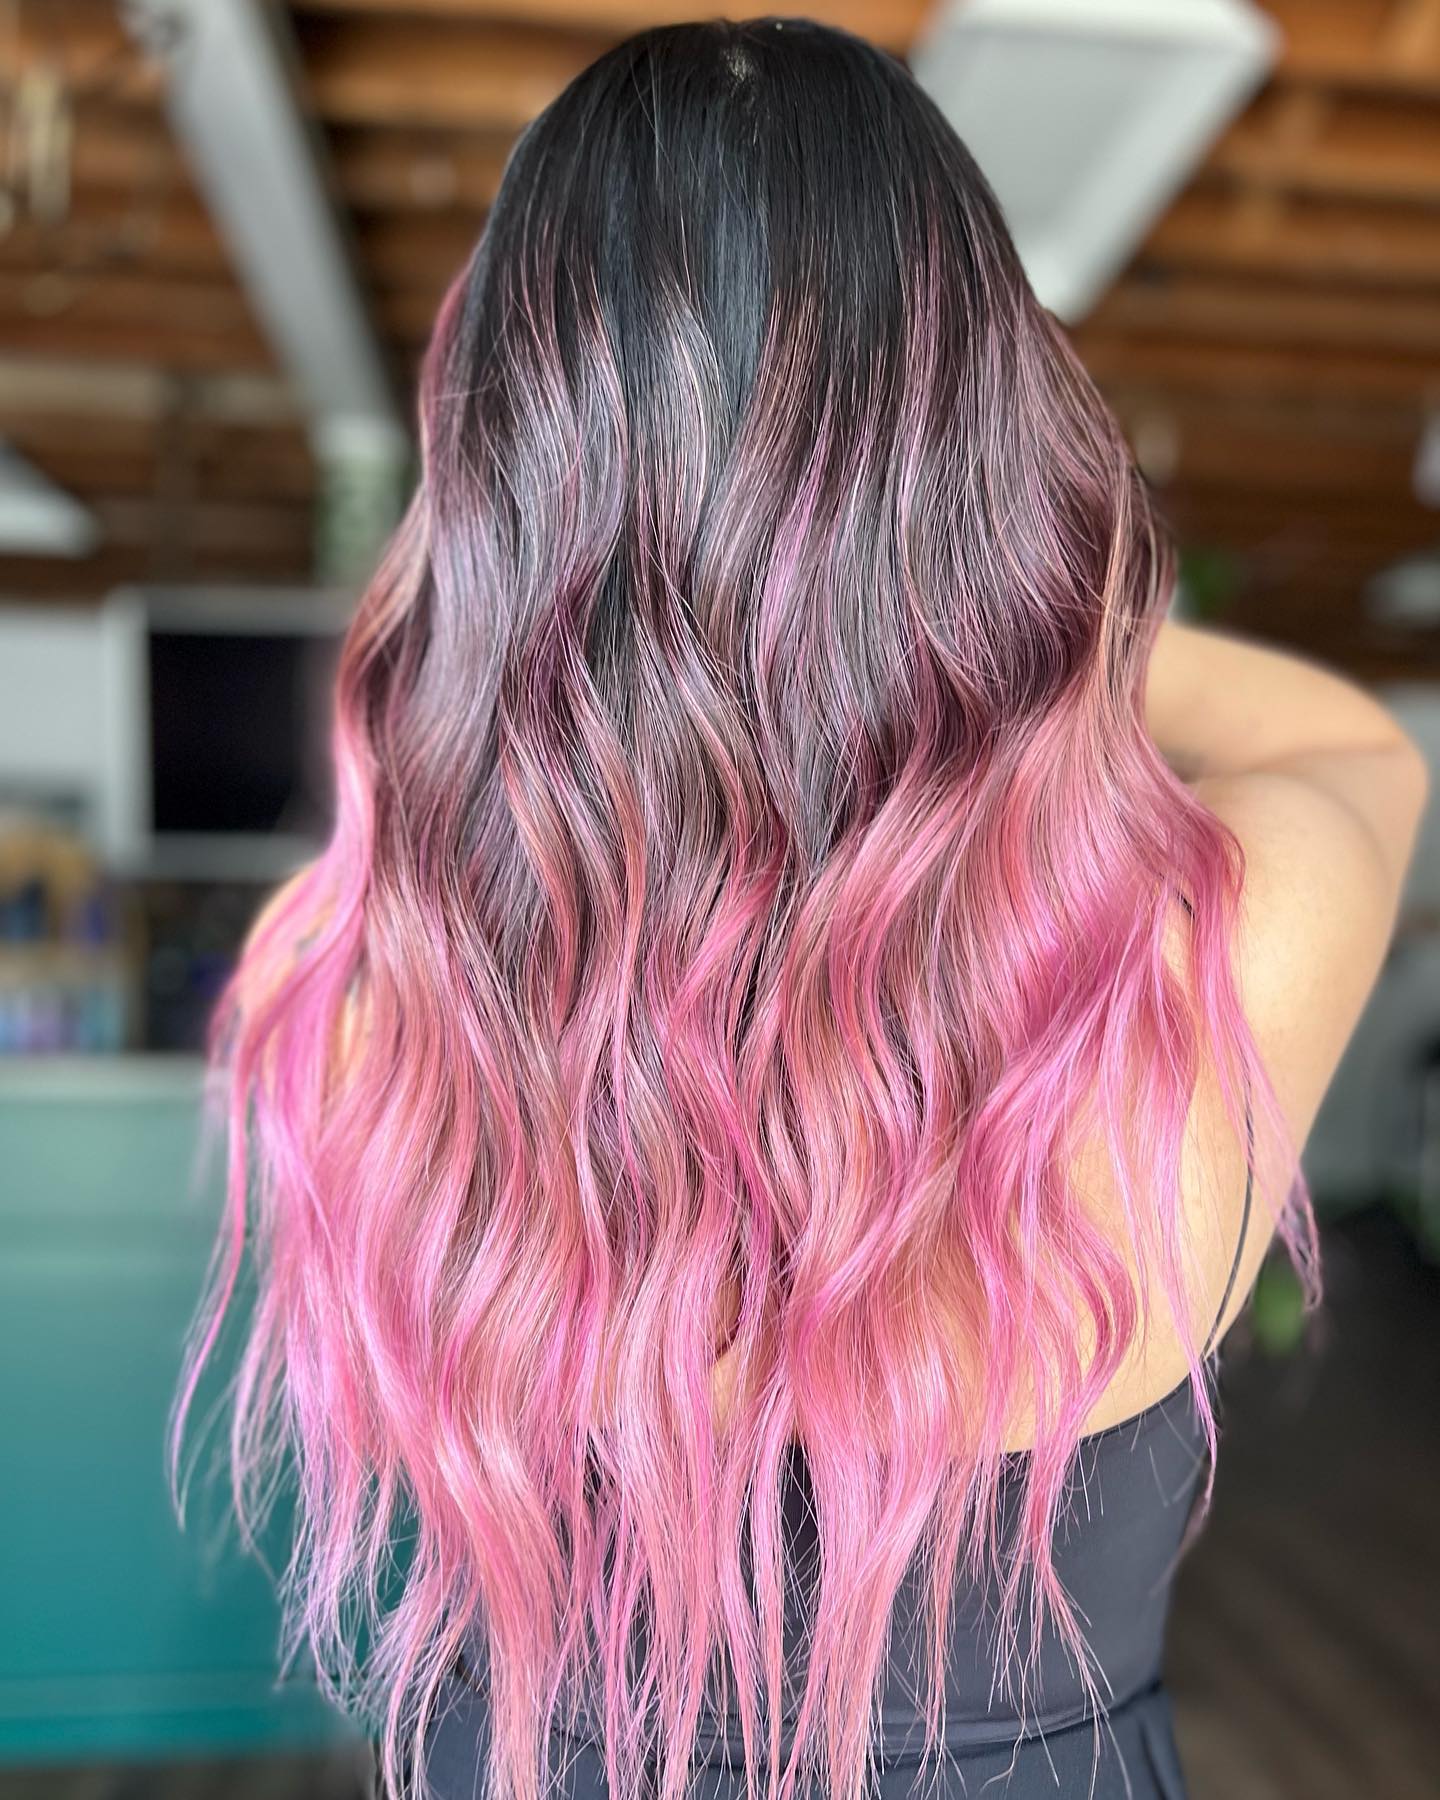 Light Pink Highlights on Long Wavy Dark Hair